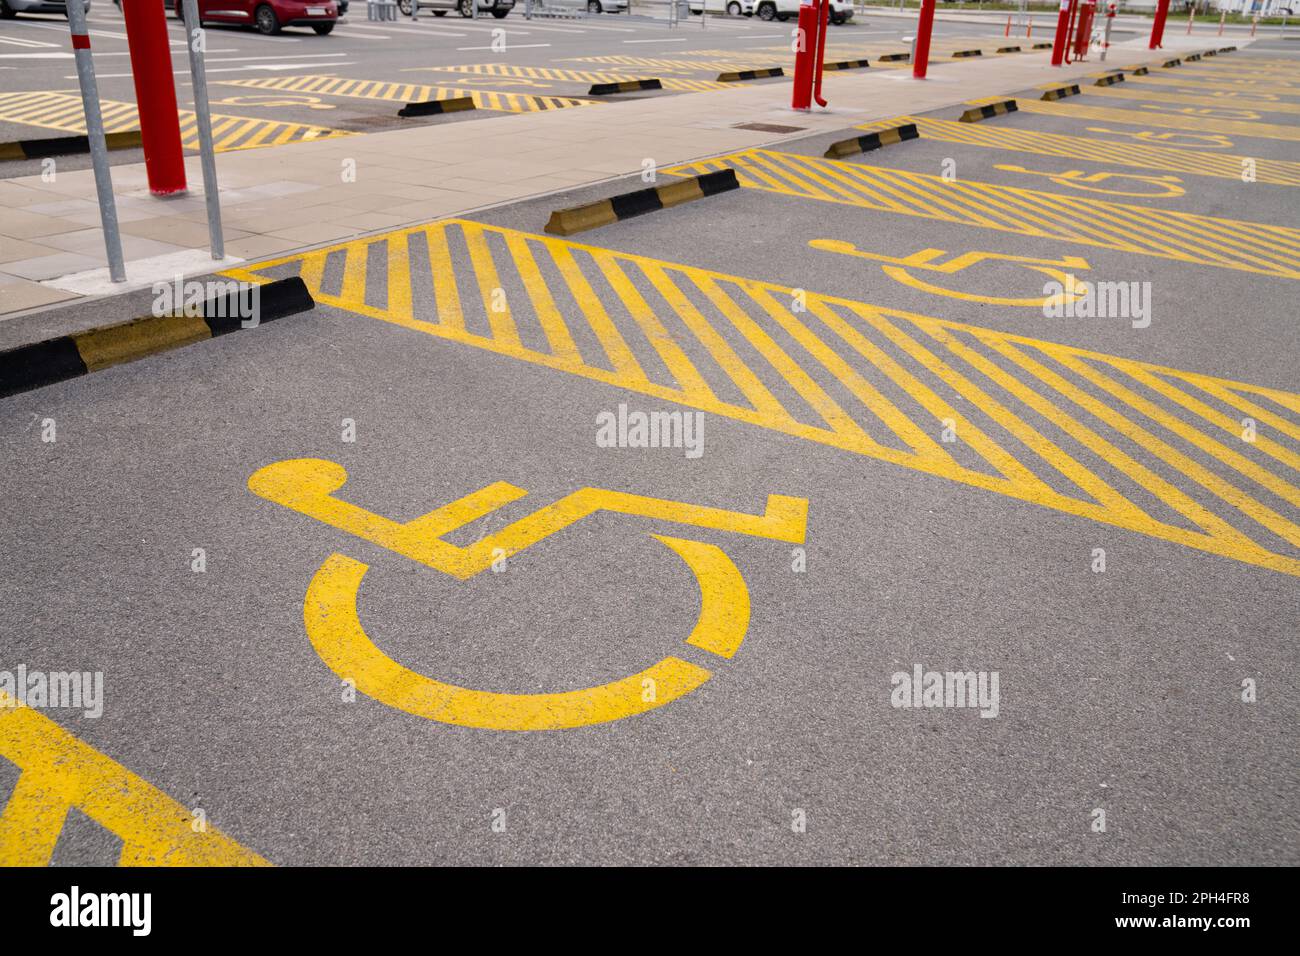 Parking handicapés avec symbole jaune. Photo de haute qualité Banque D'Images